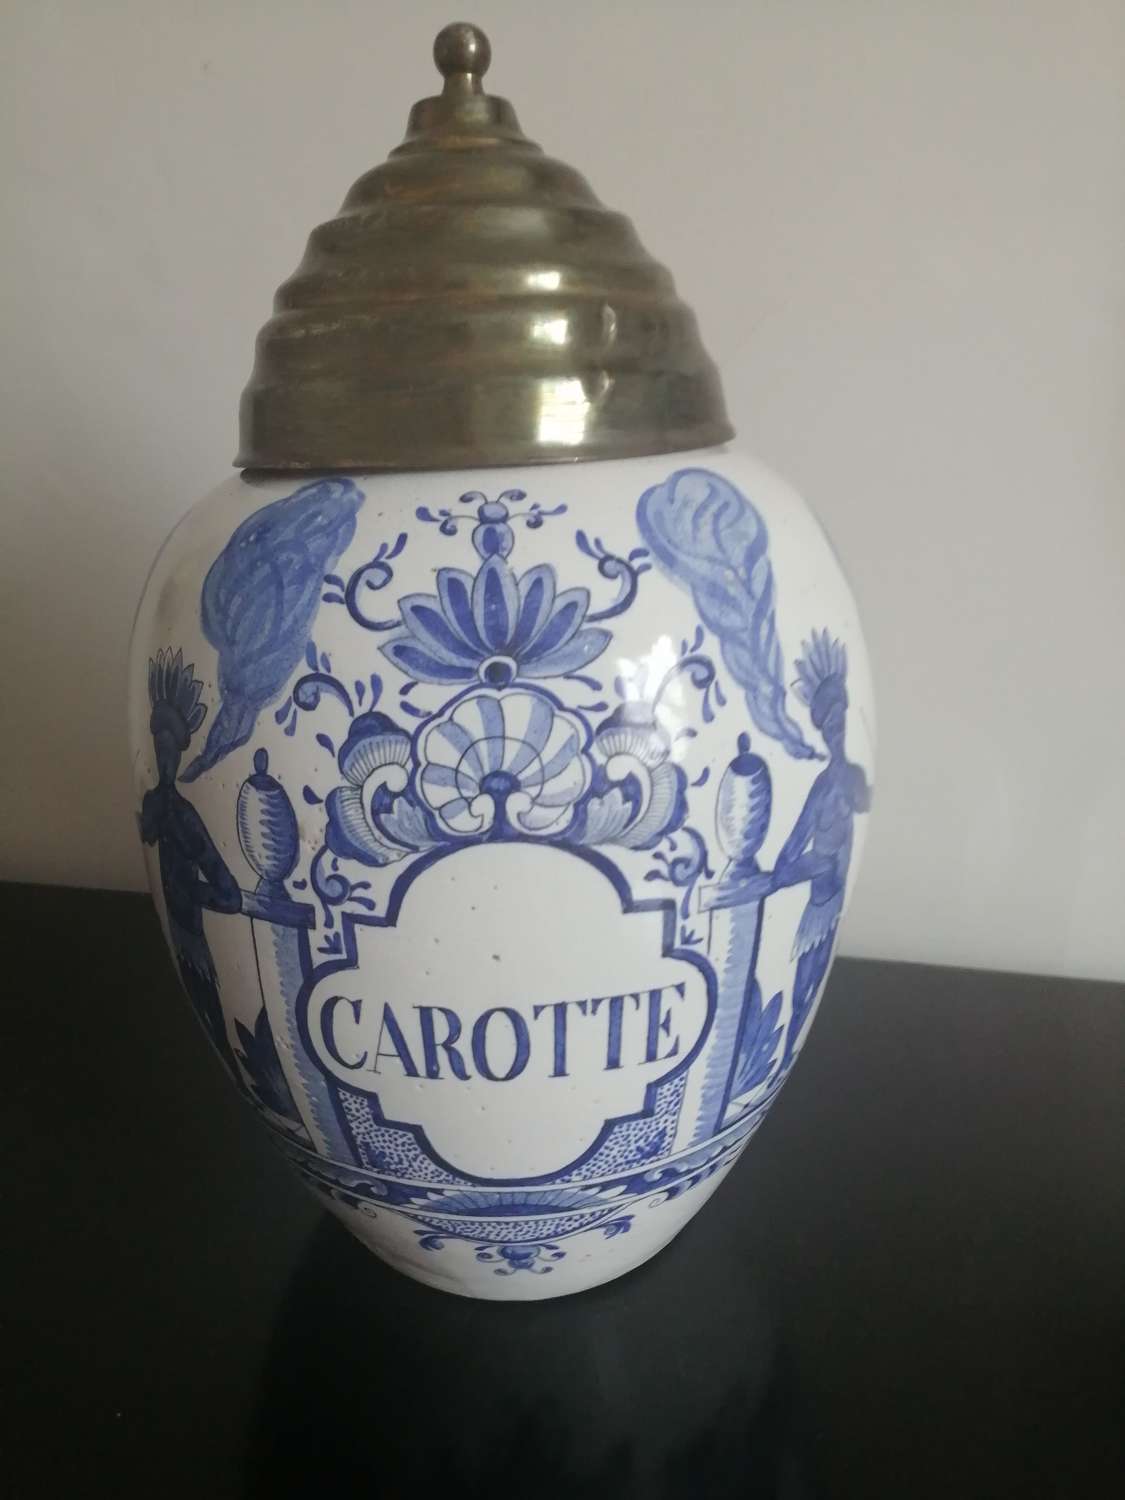 An unusual 19th century Dutch Delft tobacco jar